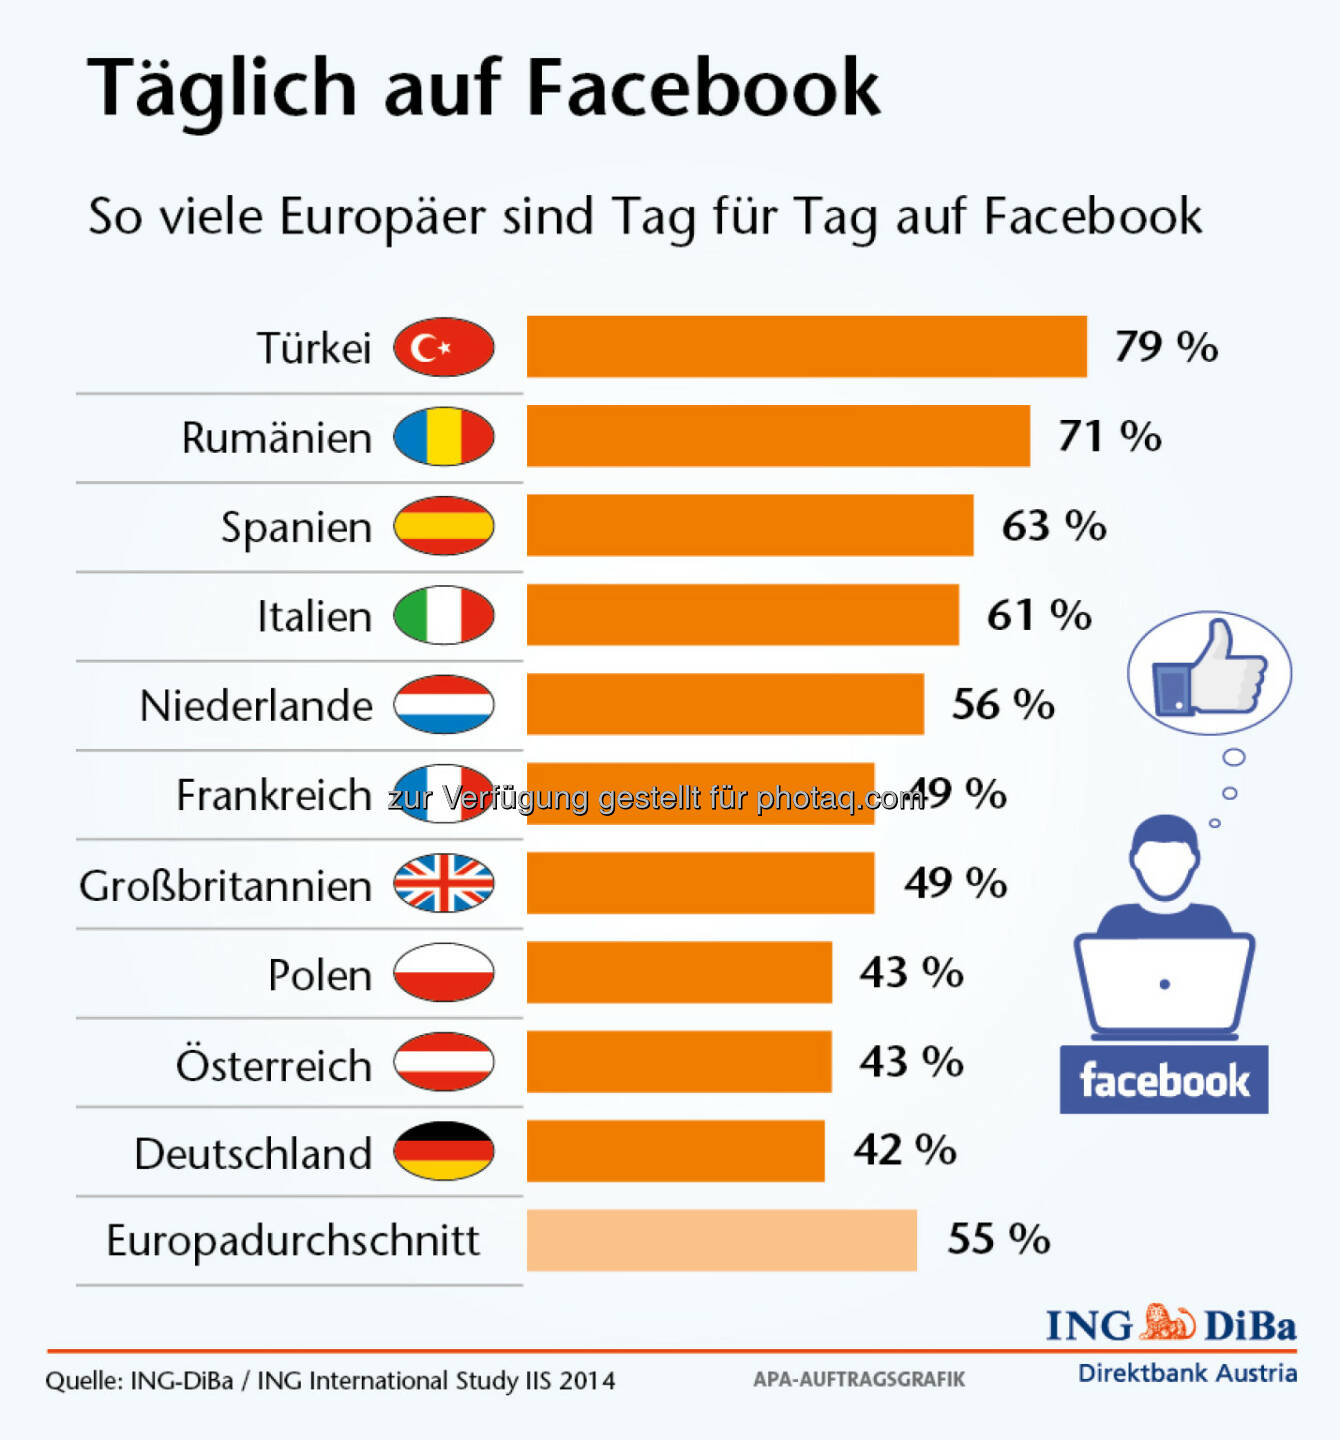 Umfrage im Auftrag der ING-DiBa: Halb Europa ist täglich auf Facebook, 55% aller befragten Europäer sind zumindest einmal täglich auf Facebook. 23% gelegentlich und 22% nie (Grafik: ING-DiBa)